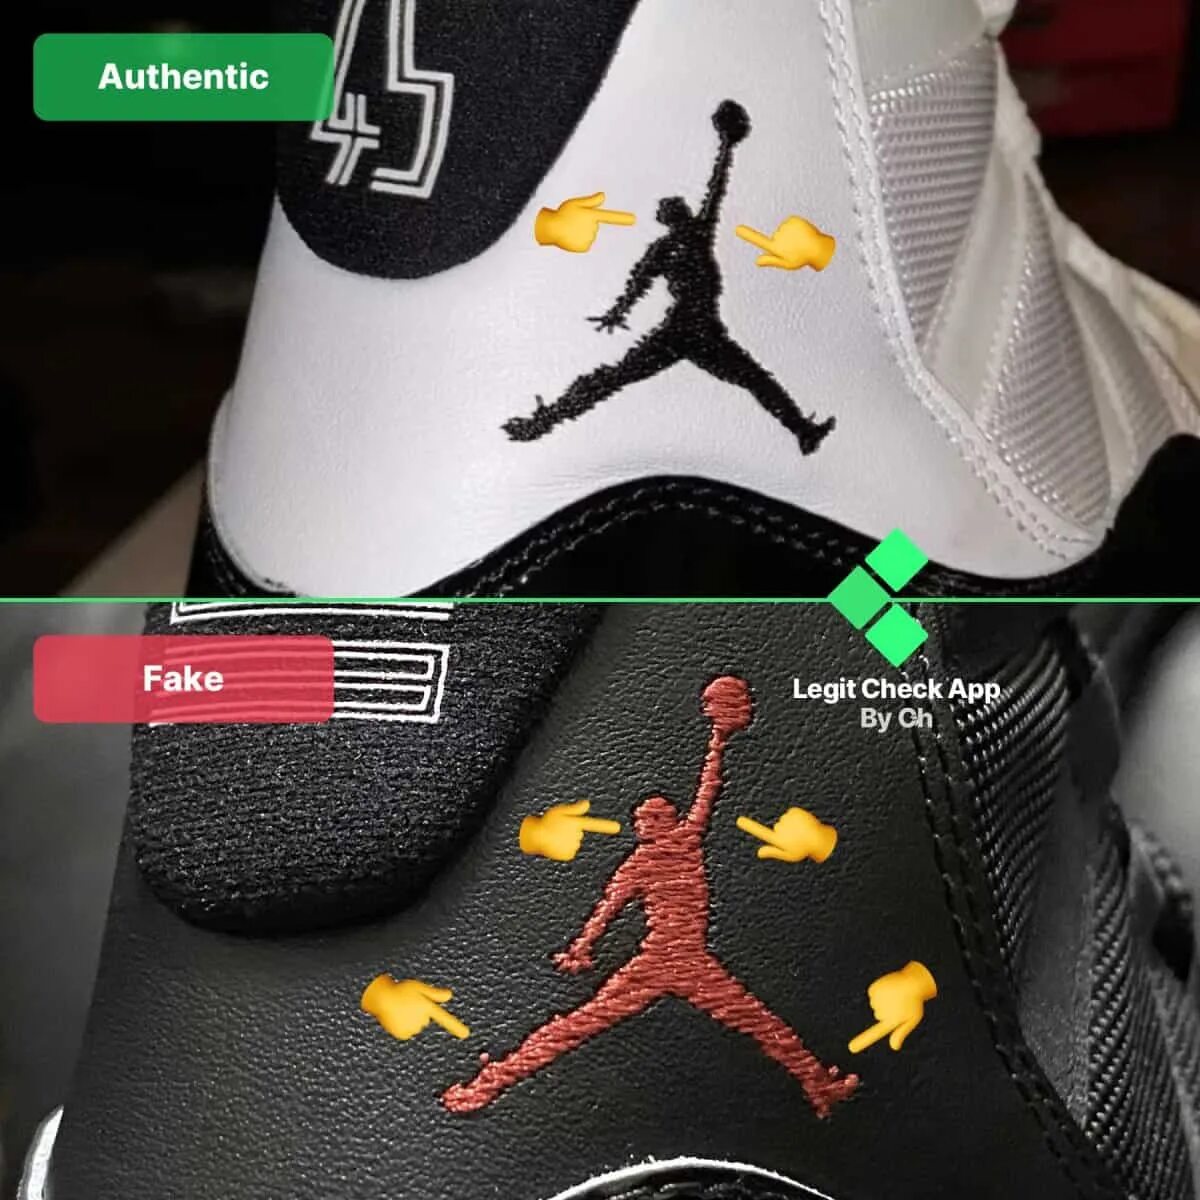 Nike Air Jordan Low fake vs Original.